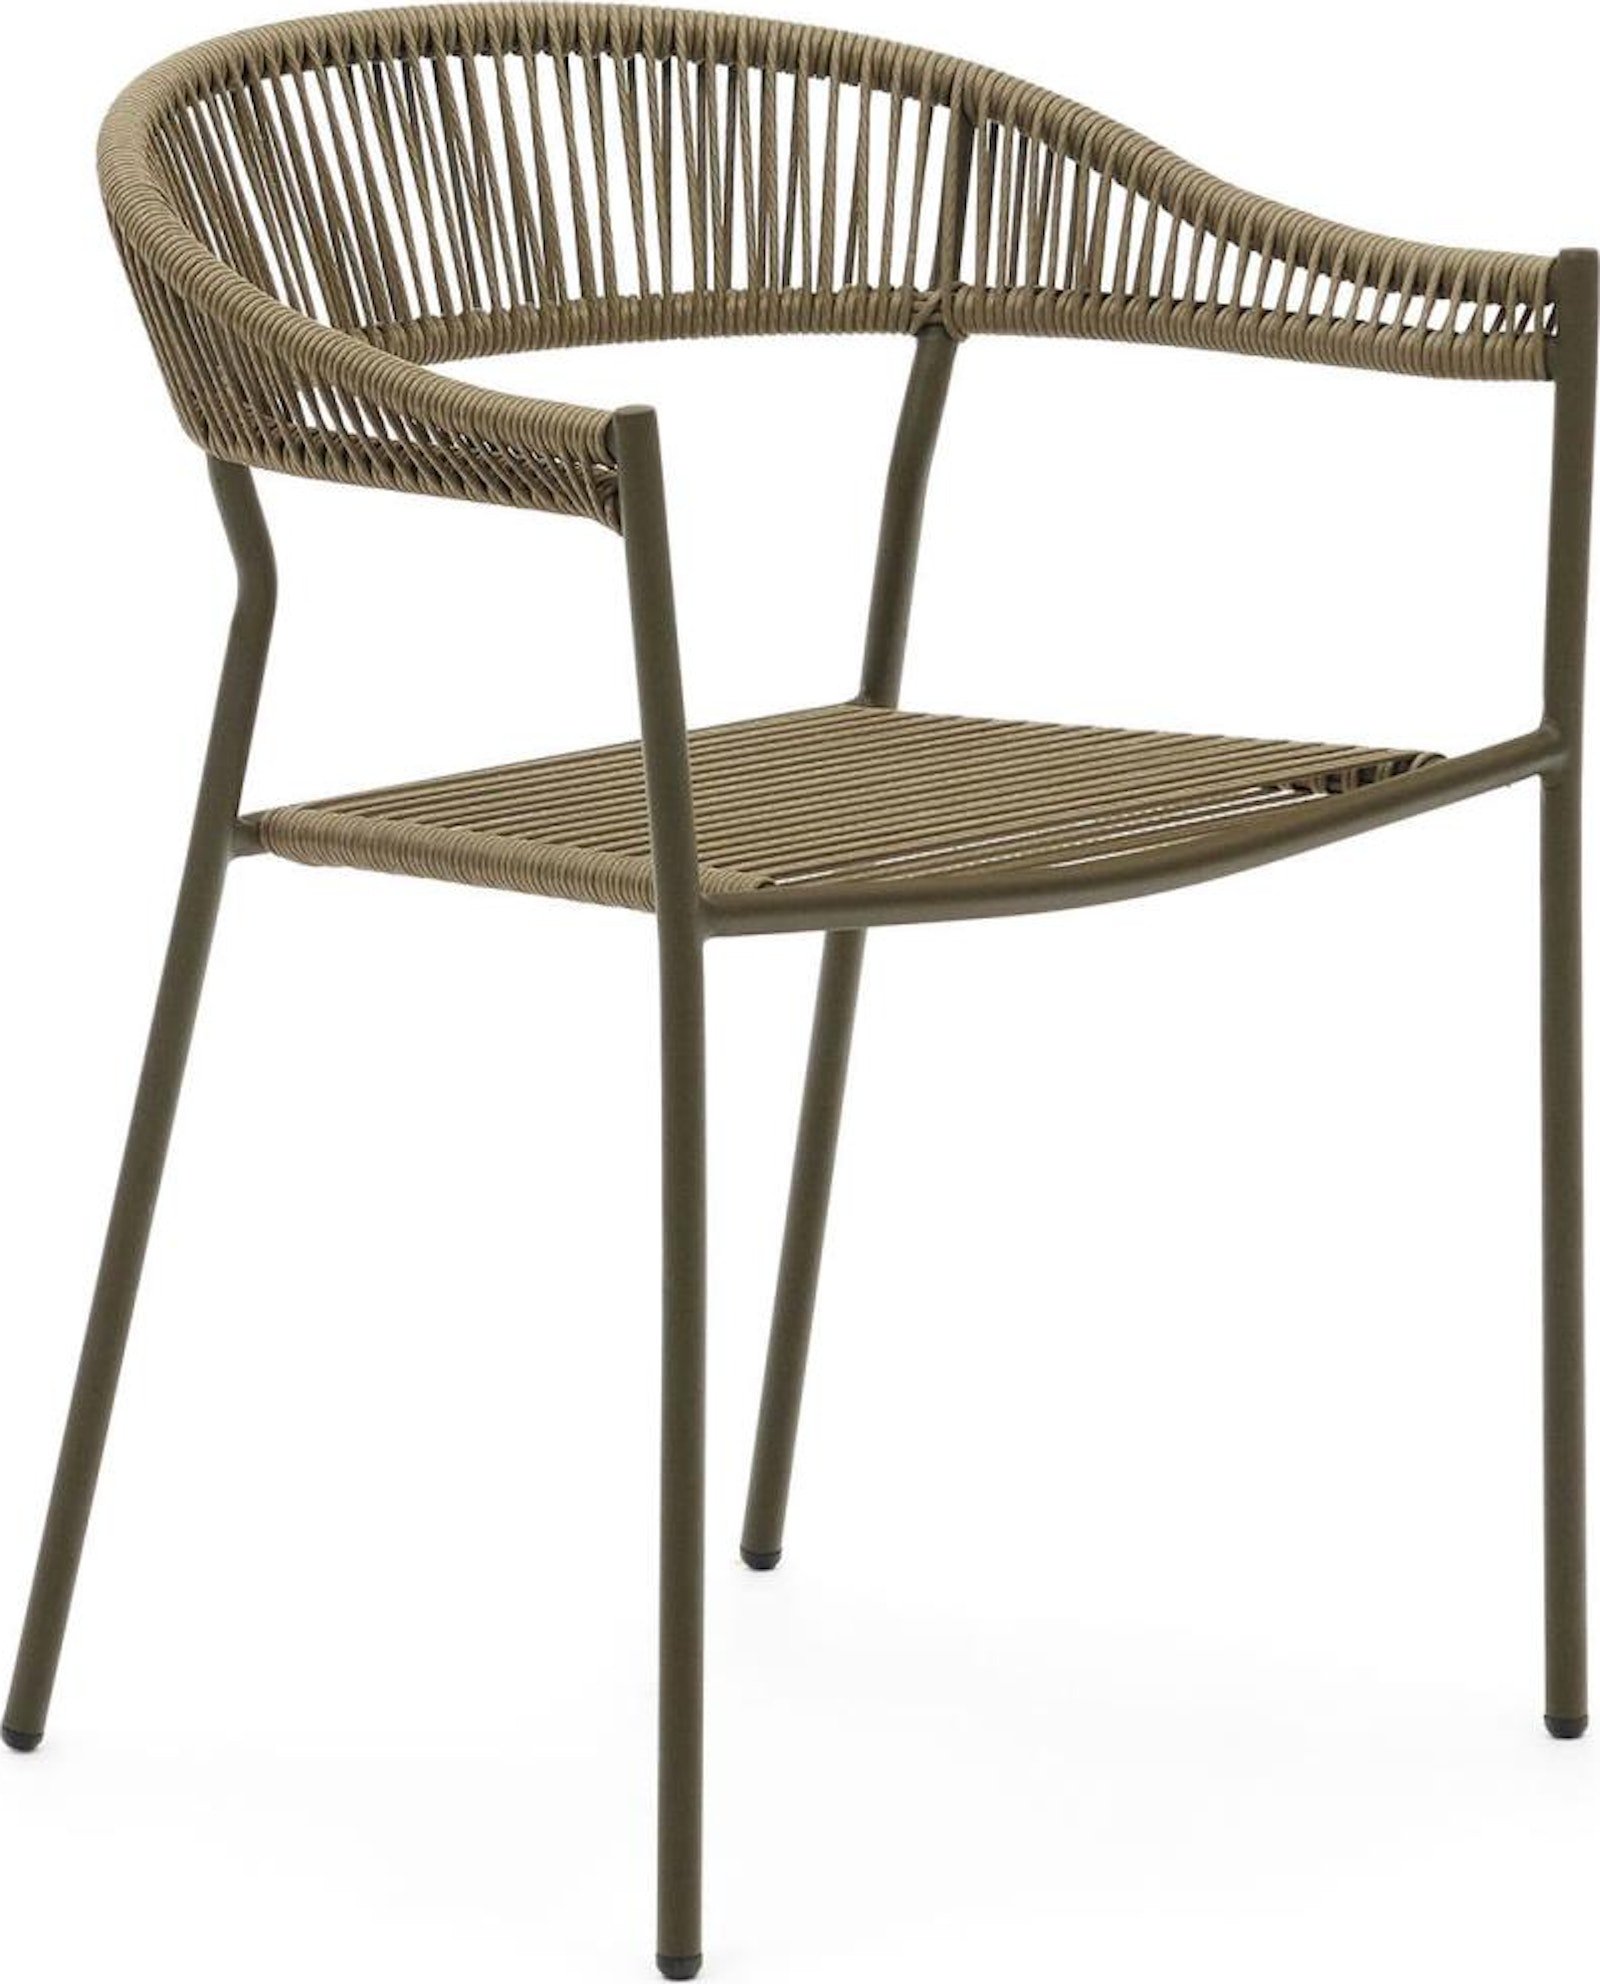 Futadera, Udendørs stol, moderne, nordisk by Laforma (H: 76 cm. x B: 57 cm. x L: 54 cm., Grøn)